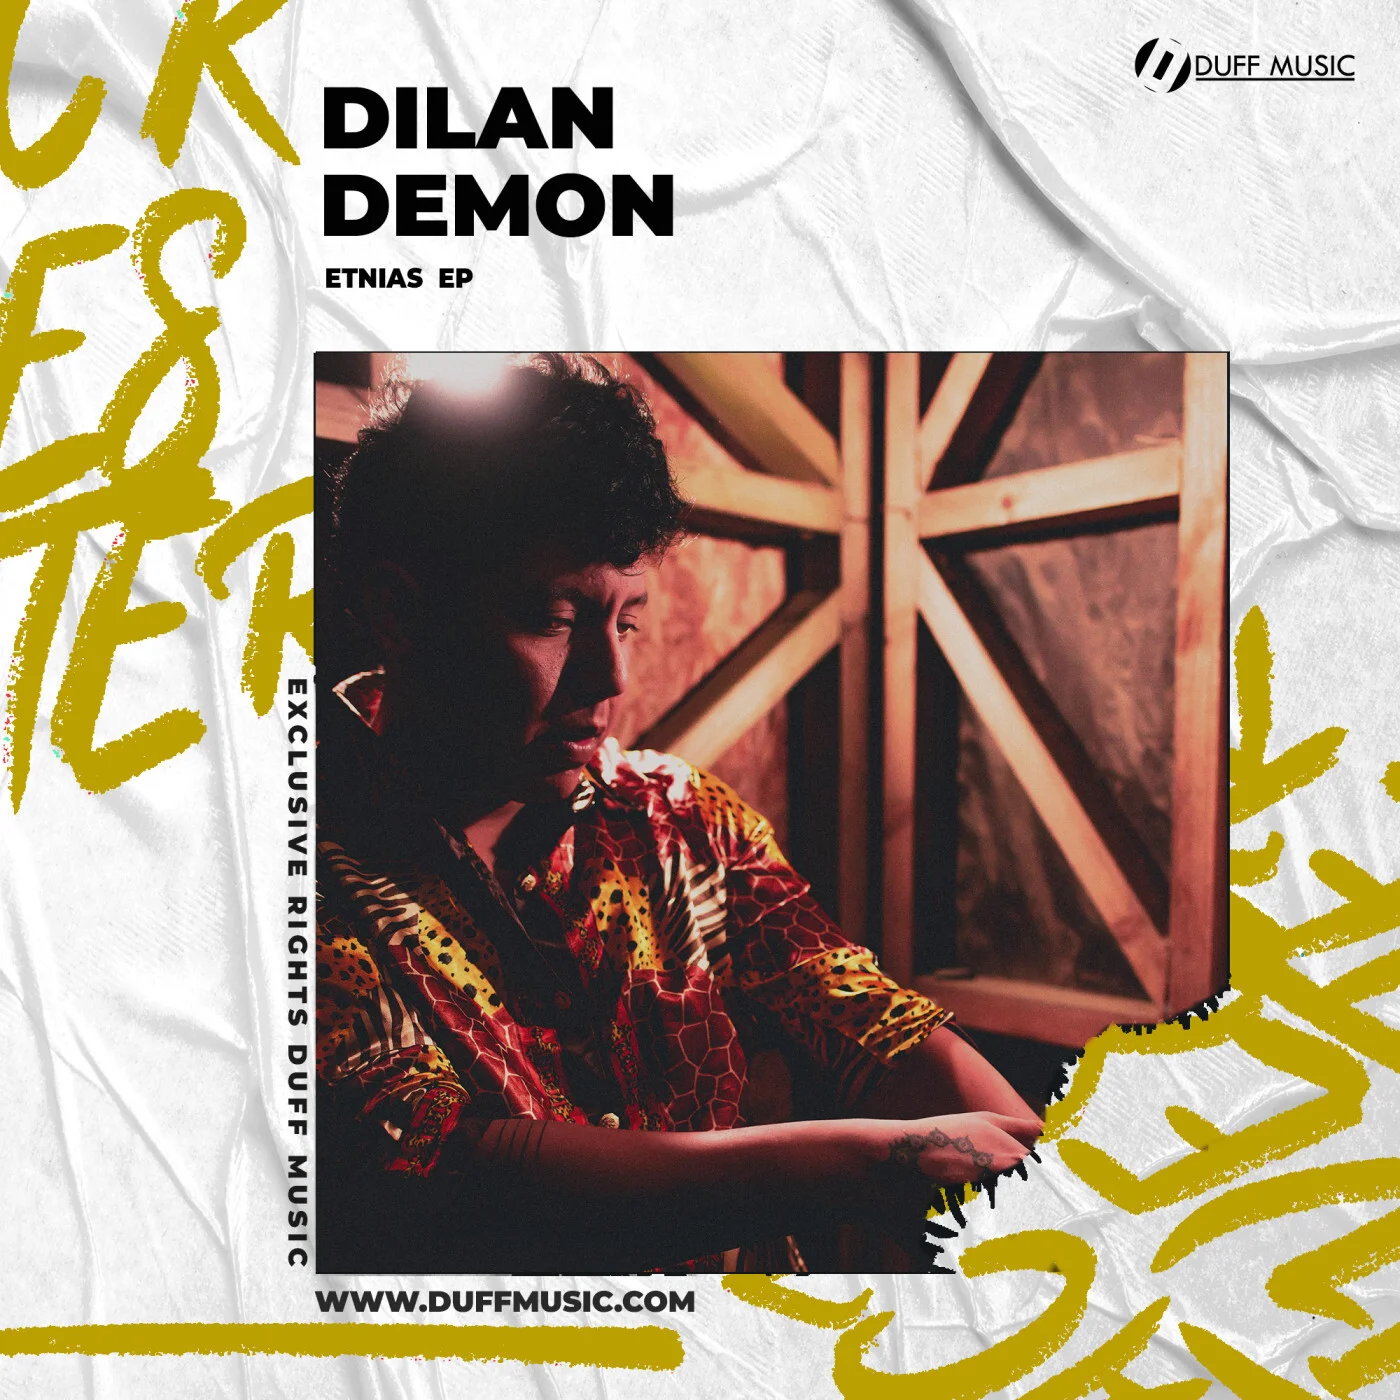 Dilan Demon - Ivy (Original Mix)